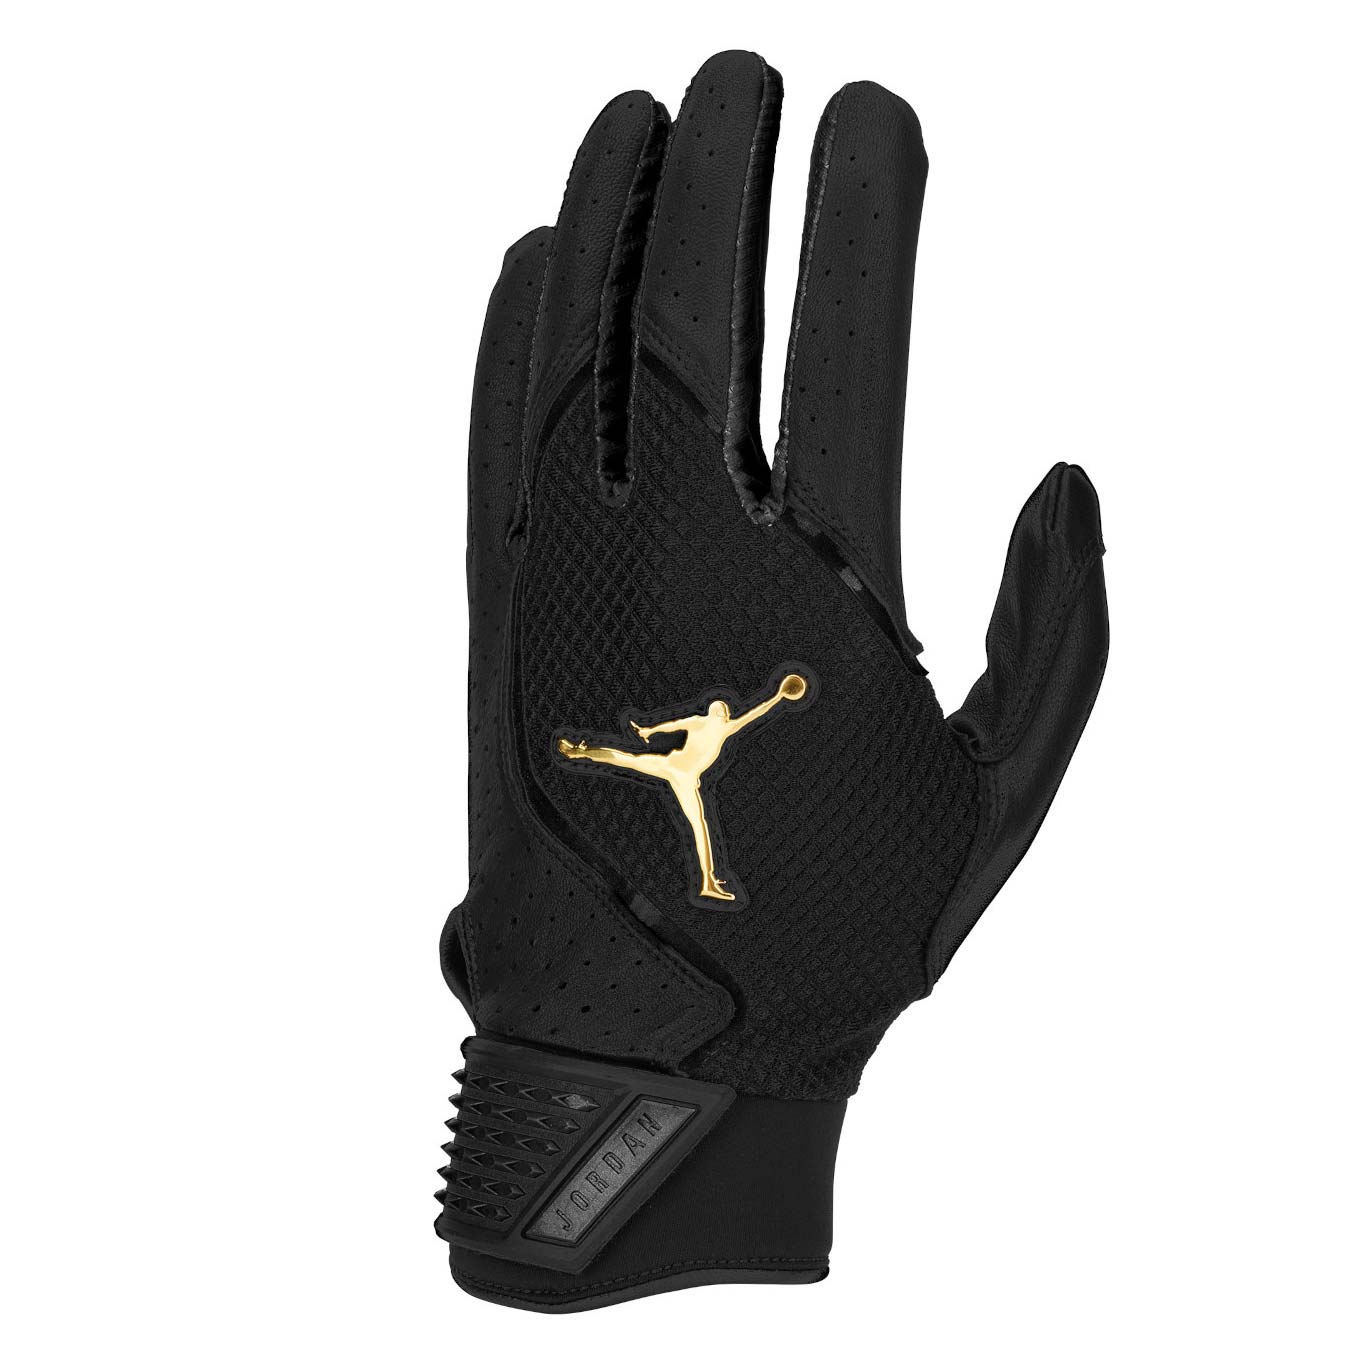 Jordan Fly Elite Batting Gloves